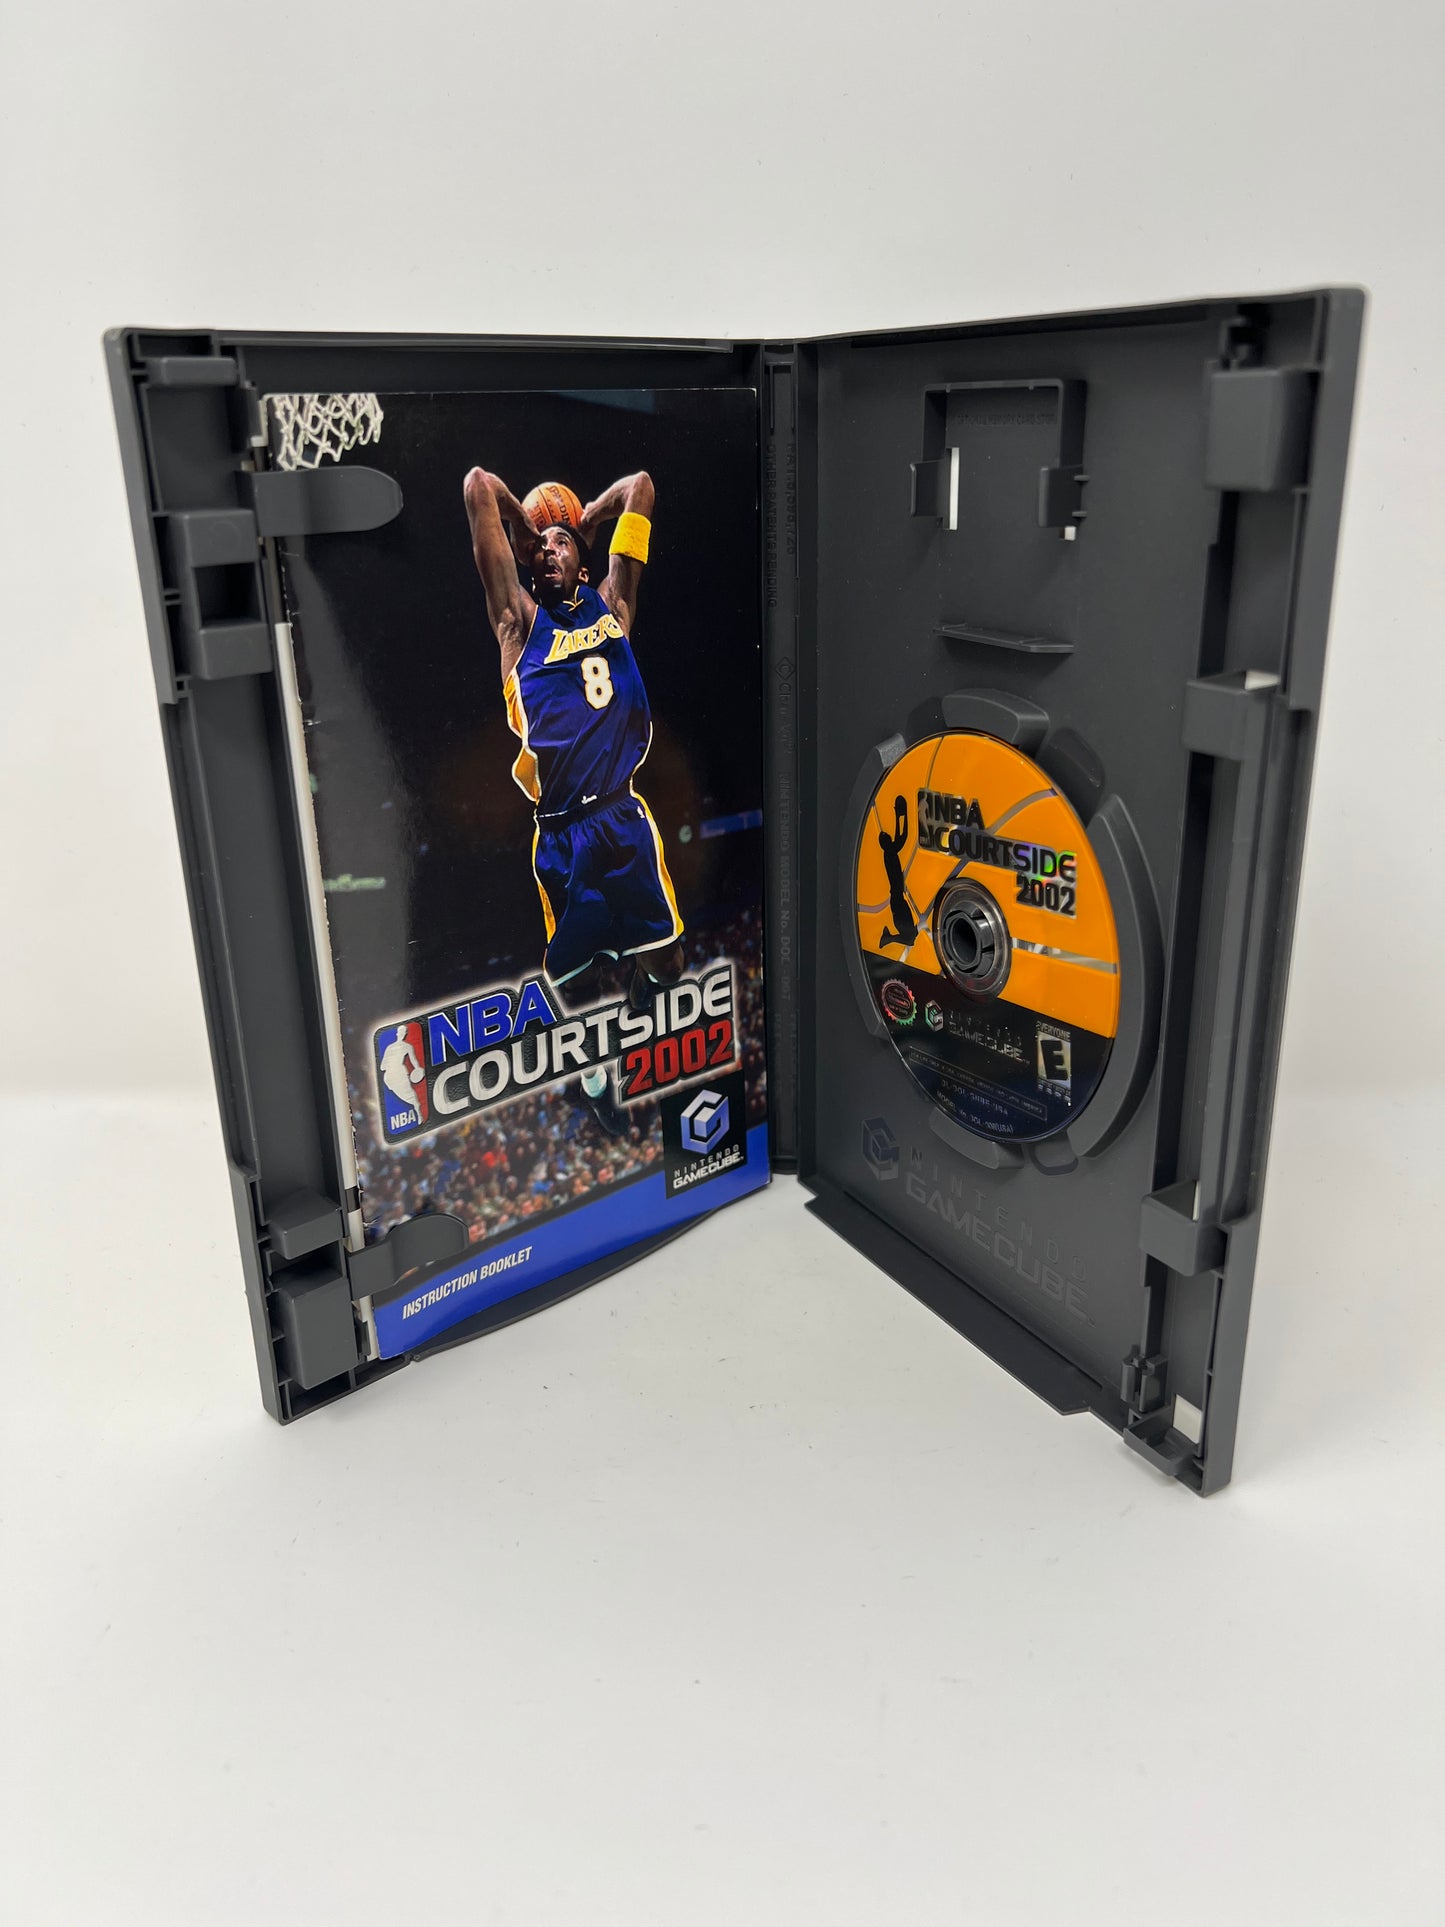 NBA Courtside 2002 - Gamecube - Used